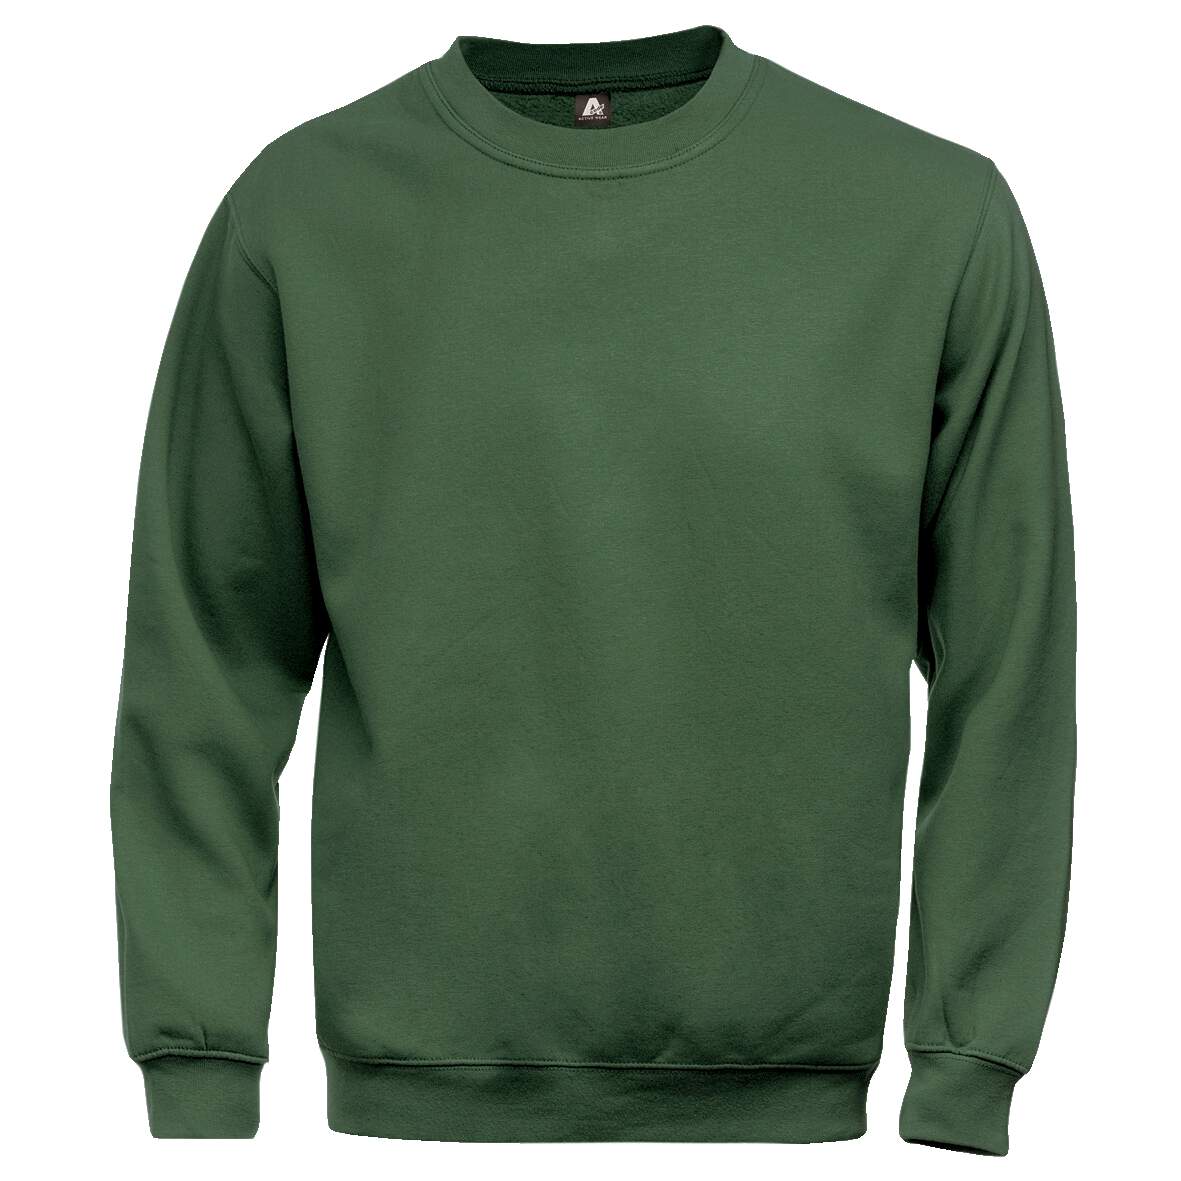 1181259 - Sweatshirt grün 100225